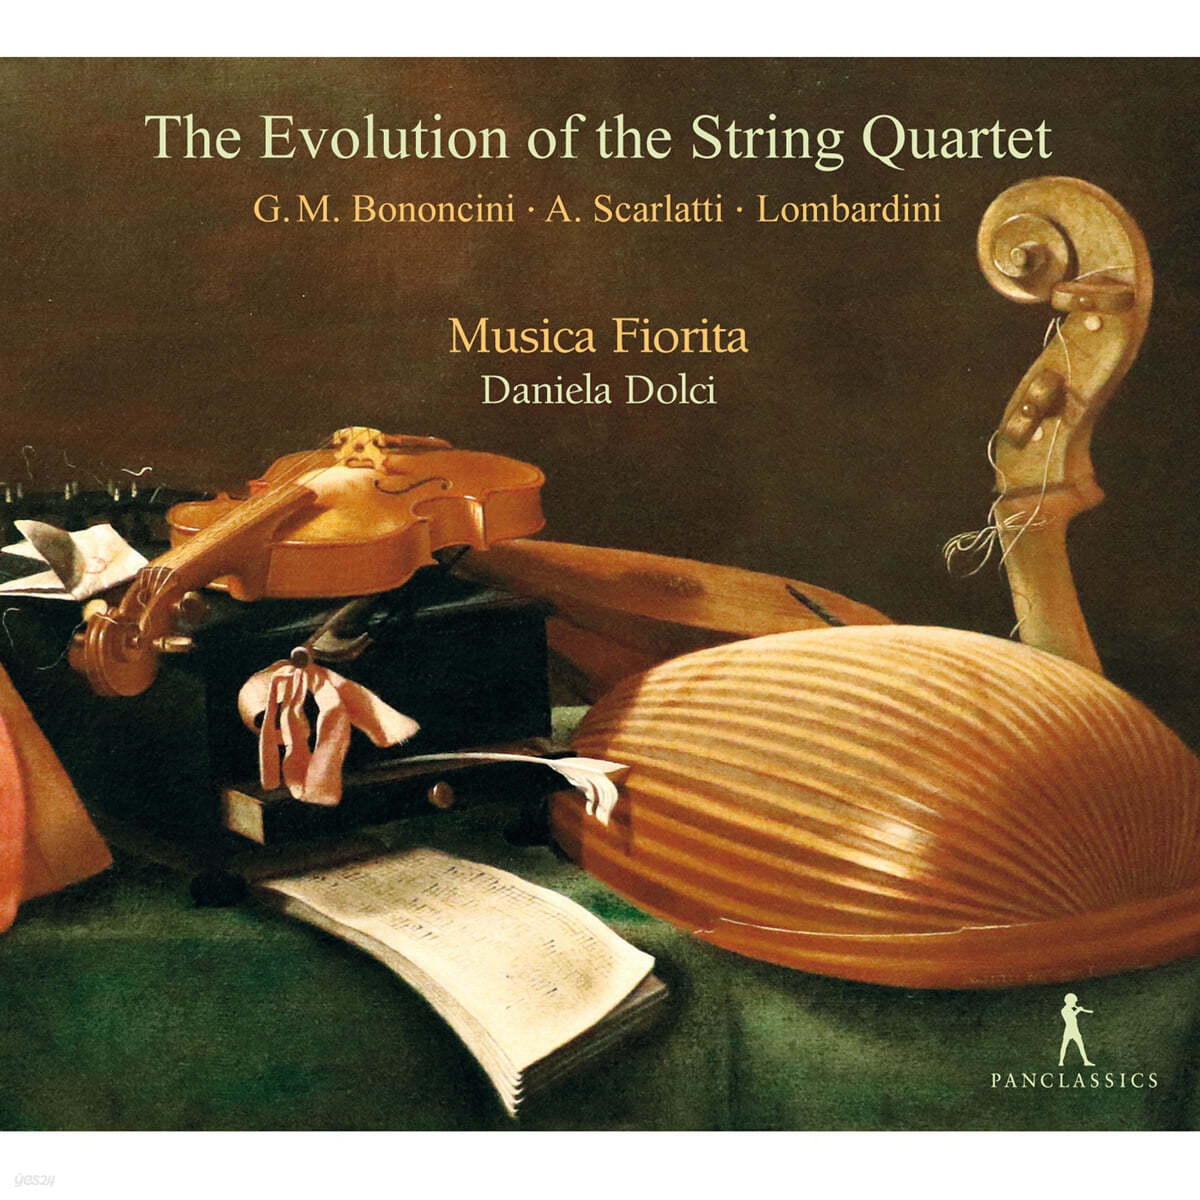 Musica Fiorita 보논치니 / 알레산드로 스카를라티 / 시르멘: 소나타와 사중주 (Bononcini / Alessandro Scarlatti / Sirmen: Sonatas and String Quartets) 